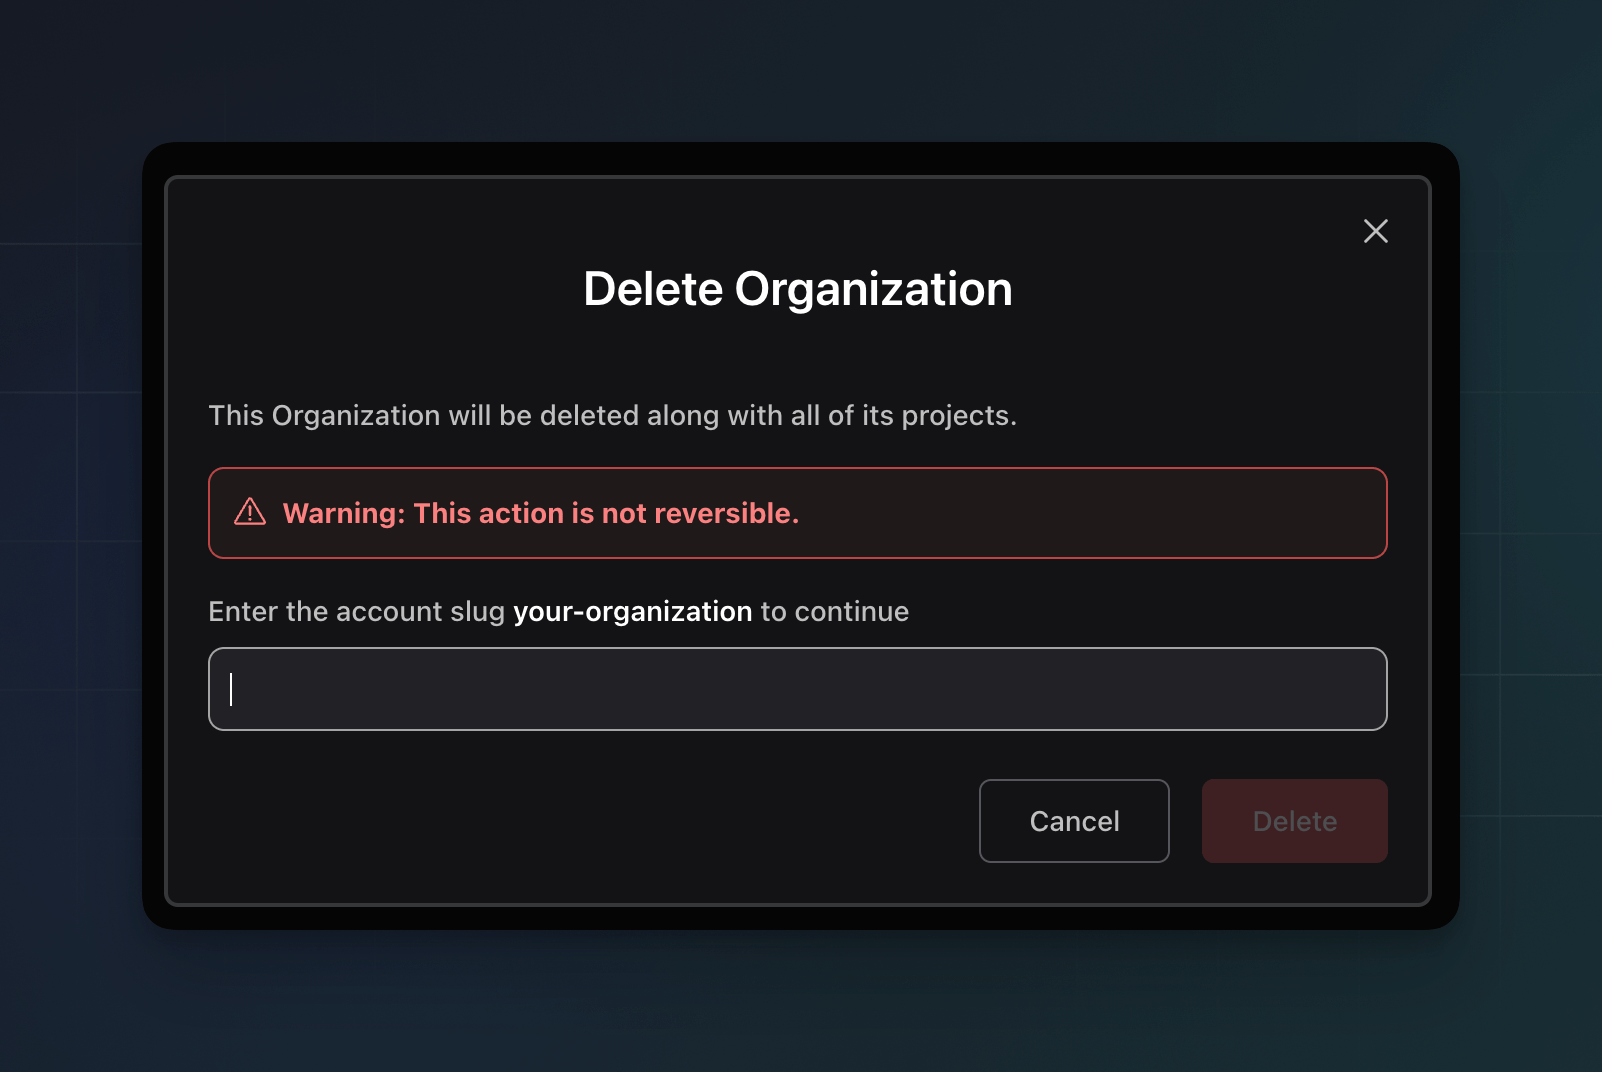 Delete organization